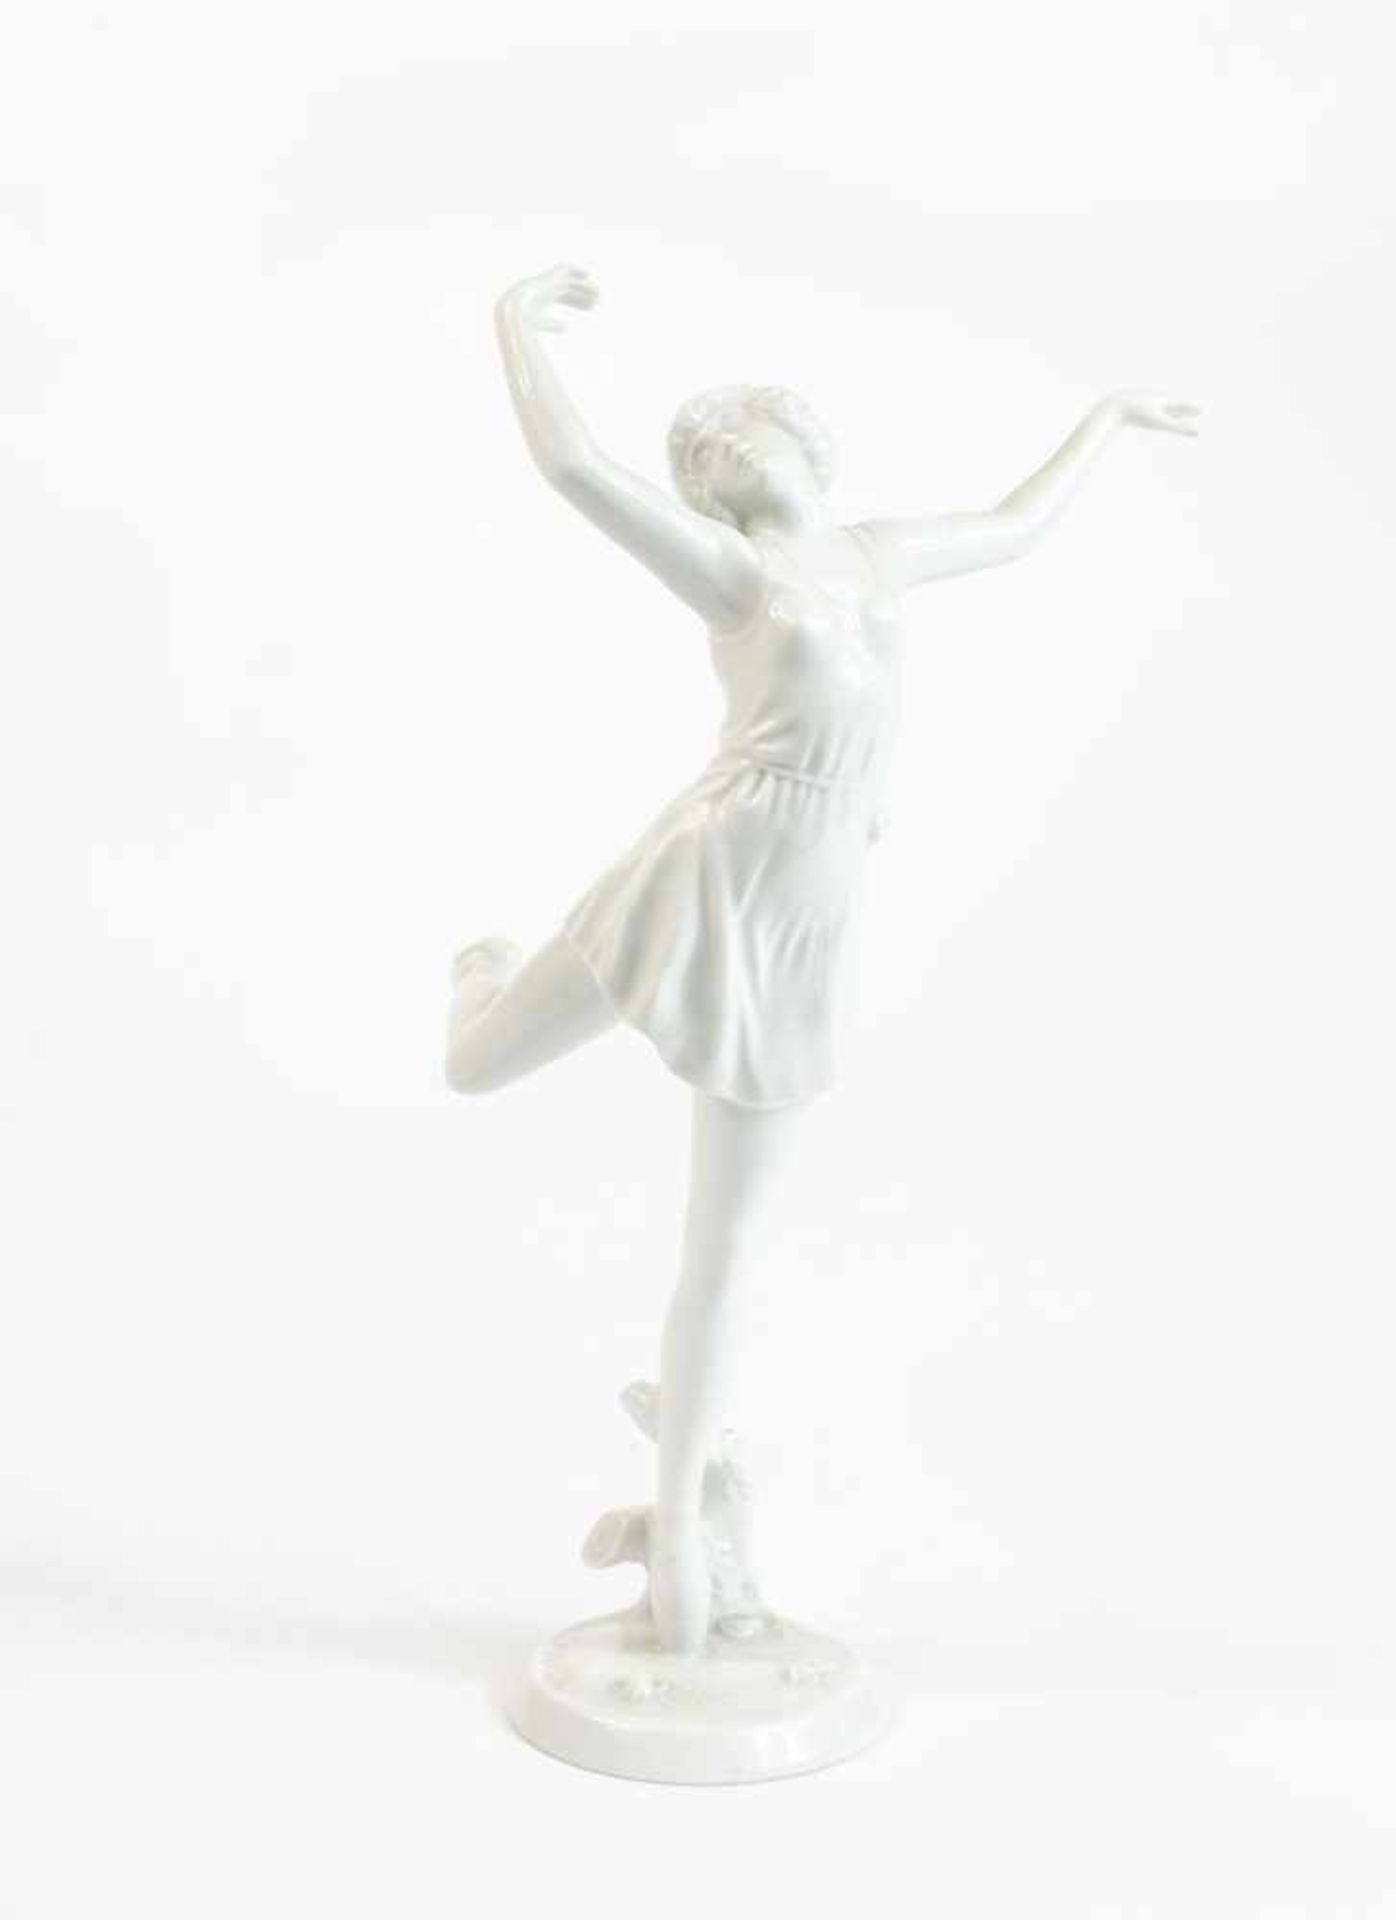 Ballerina Rosenthal, um 1930, Entwurf von Dorothea Charol (1889 - 1963), Porzellan, weiß, Höhe 29